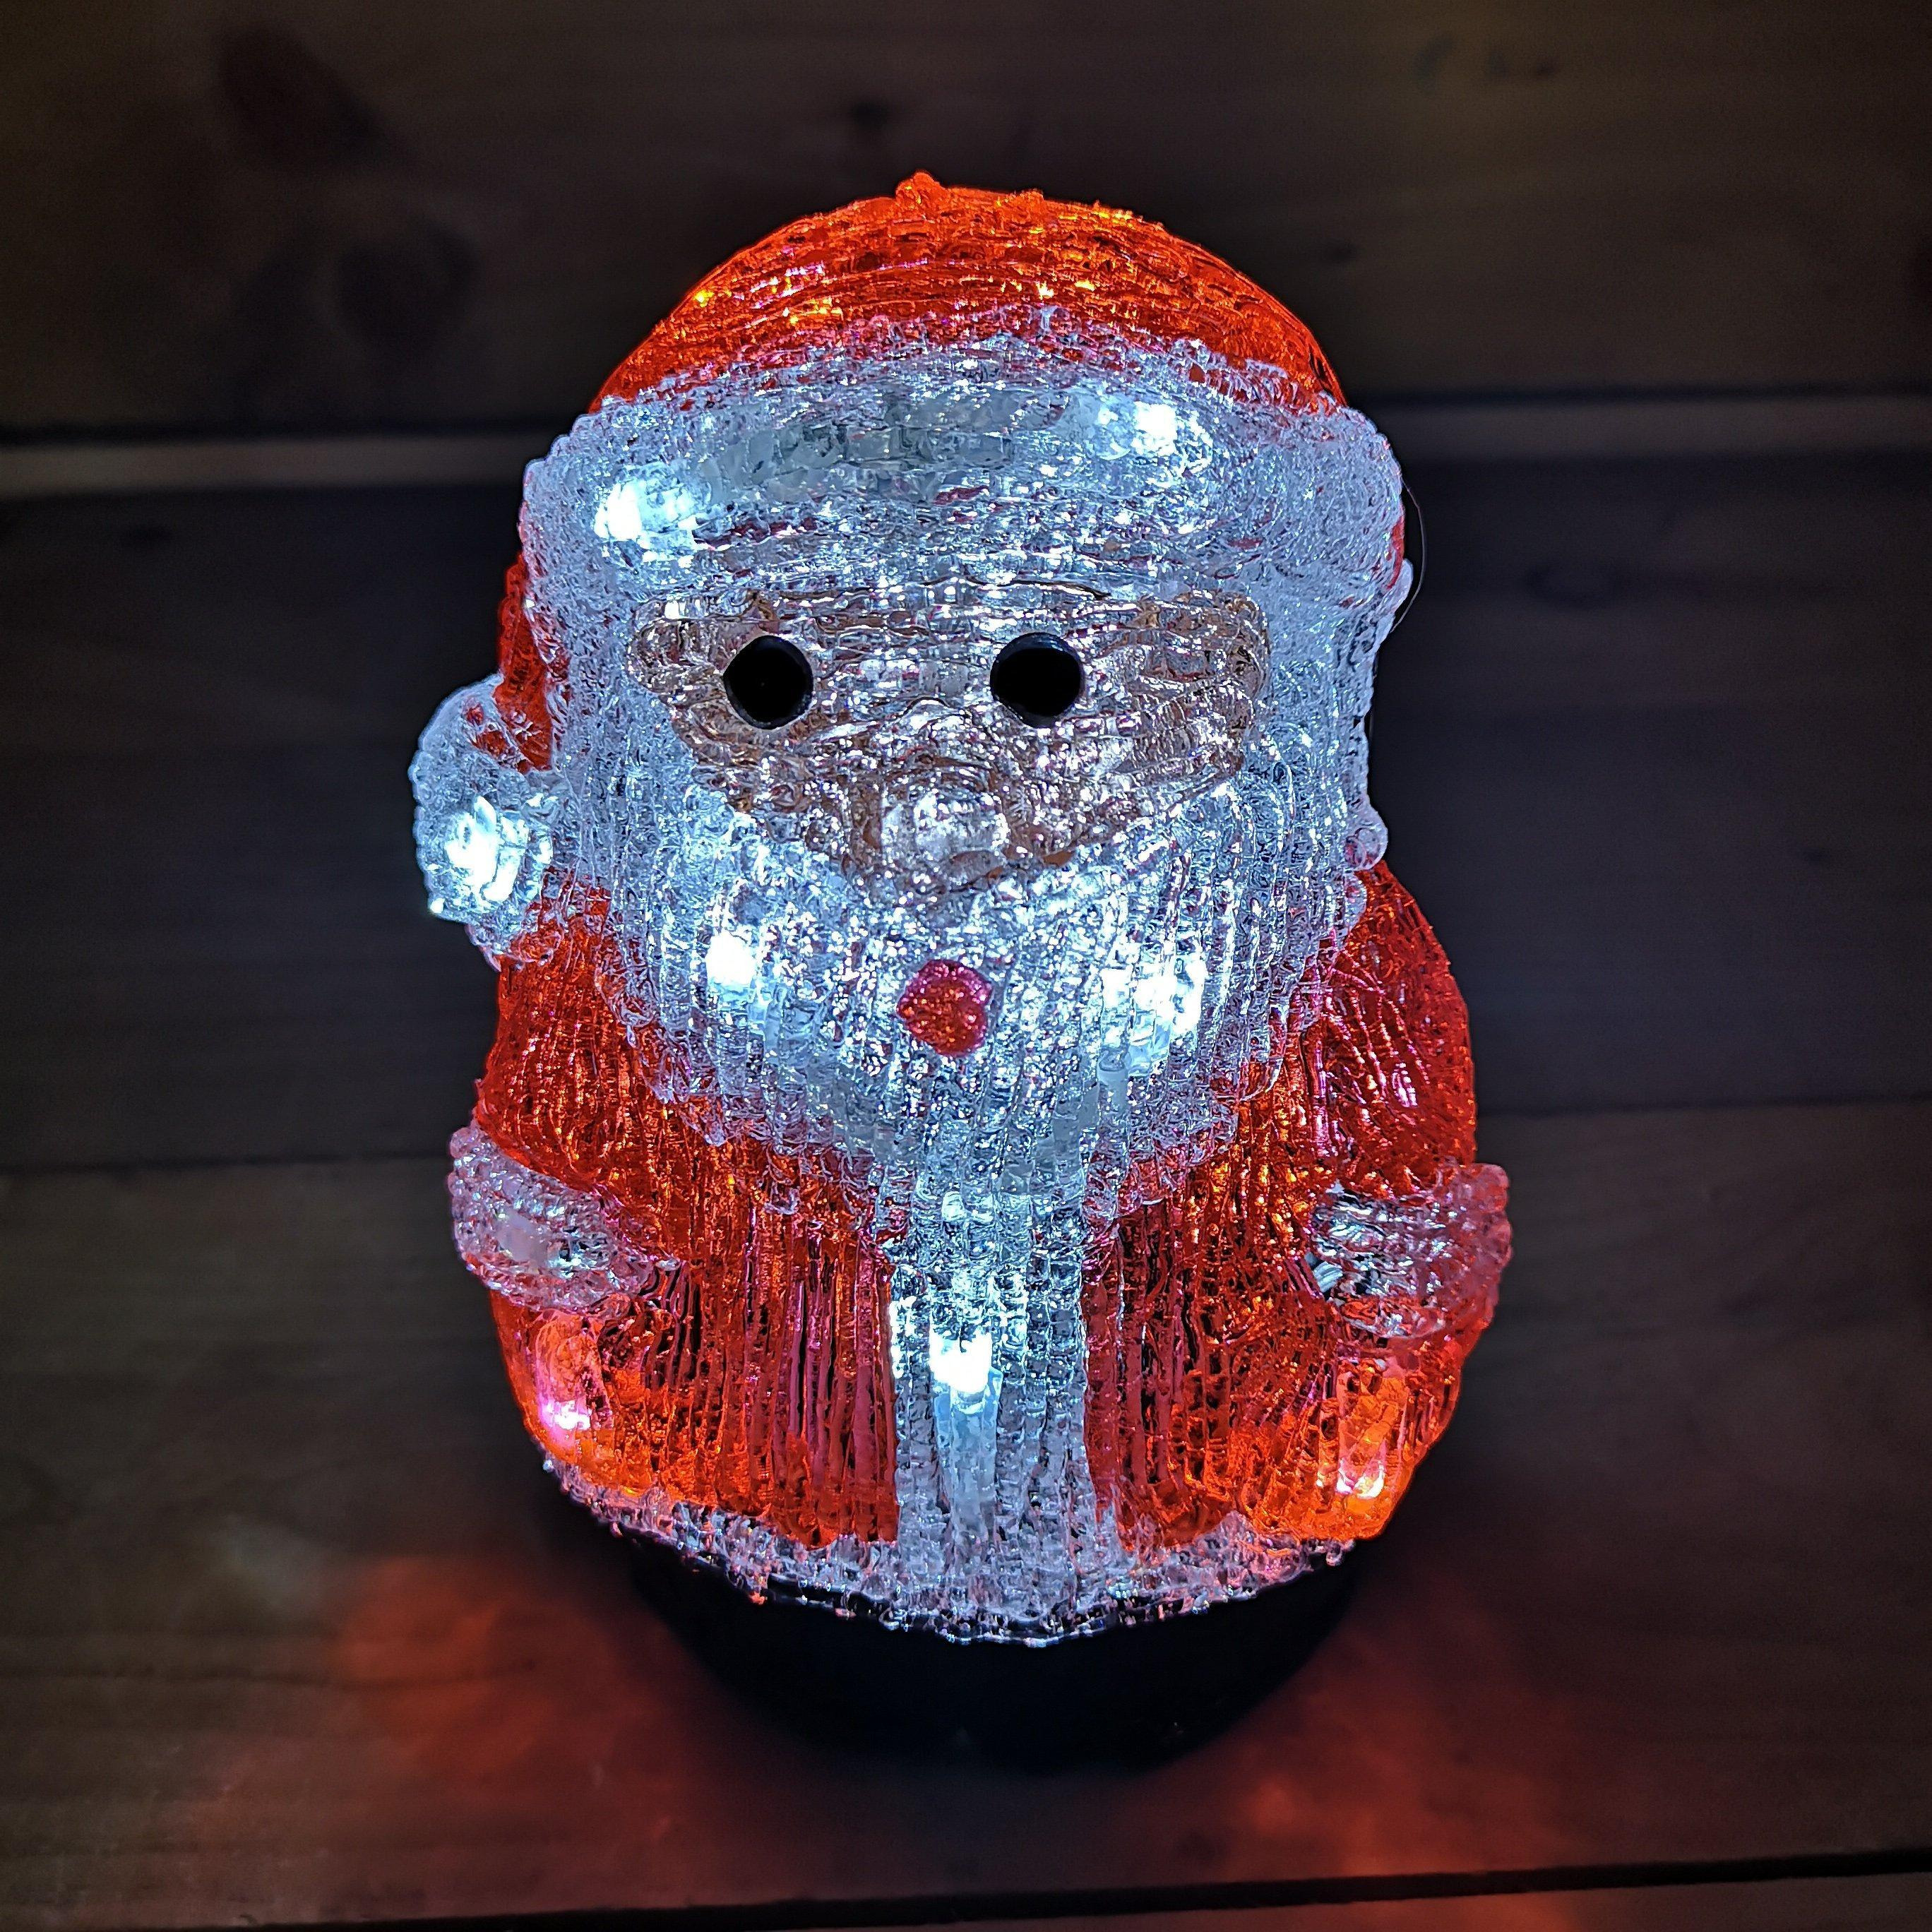 19cm Acrylic Sitting Christmas Santa With 16 Ice White LEDs - image 1